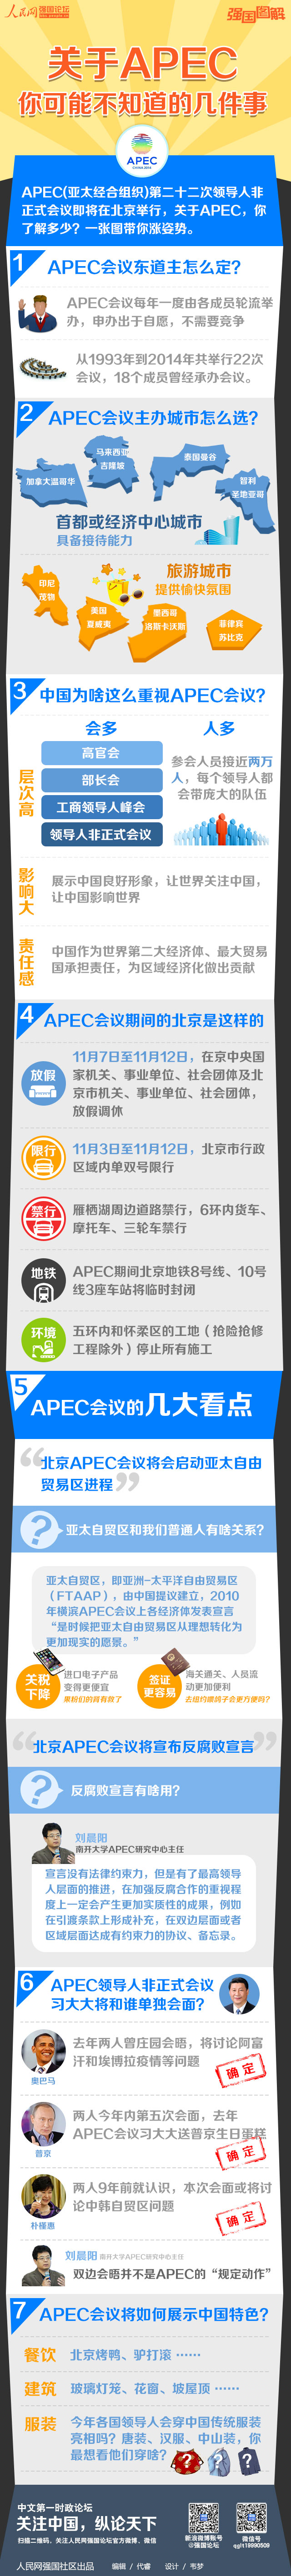 【强国图解】中国为啥这么重视APEC会议？